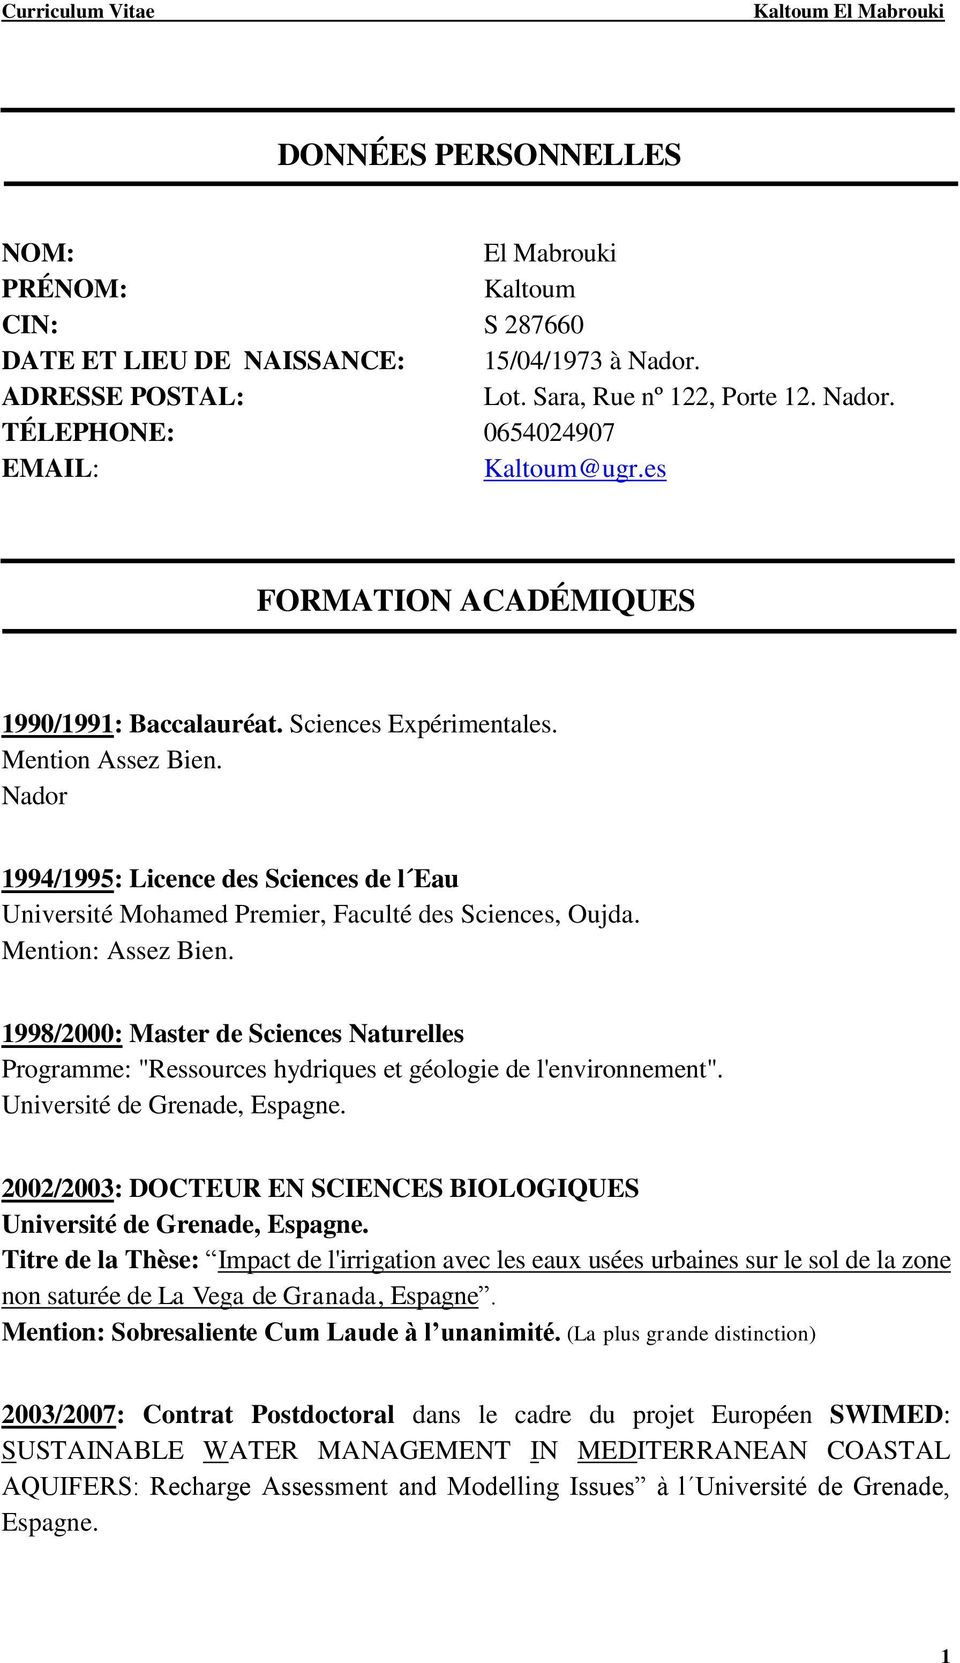 Mention: Assez Bien. 1998/2000: Master de Sciences Naturelles Programme: "Ressources hydriques et géologie de l'environnement". Université de Grenade, Espagne.